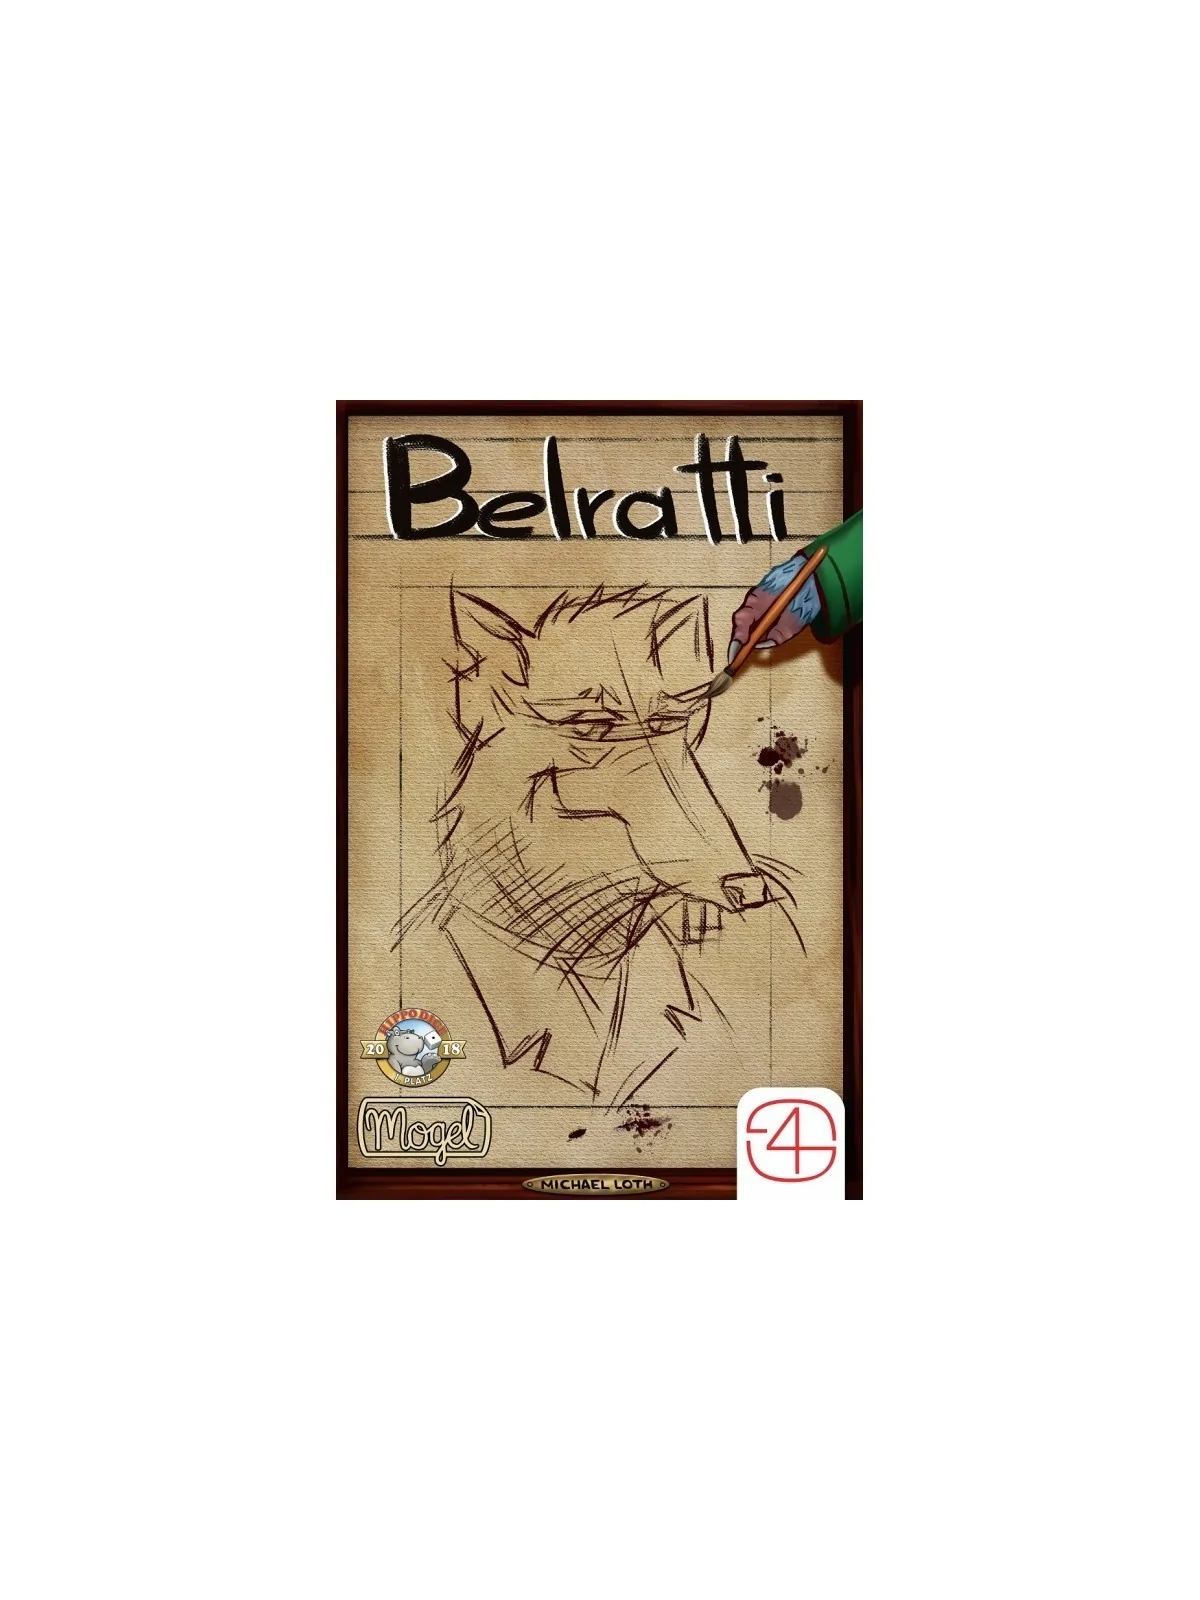 Comprar Belratti barato al mejor precio 17,96 € de Games for Gamers